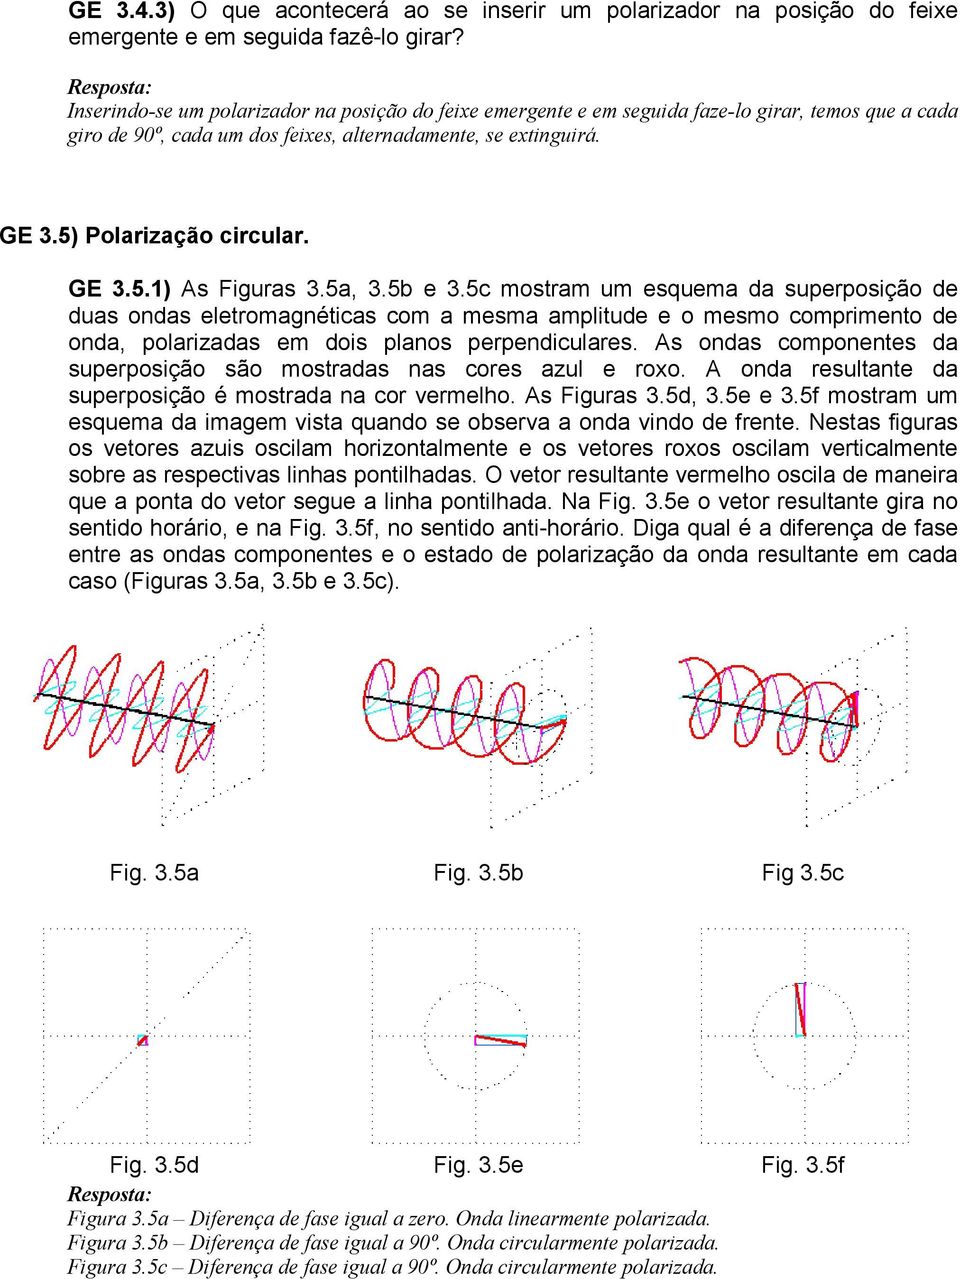 5a,.5b e.5c mostram um esquema da superposição de duas ondas eletromagnéticas com a mesma amplitude e o mesmo comprimento de onda, polarizadas em dois planos perpendiculares.